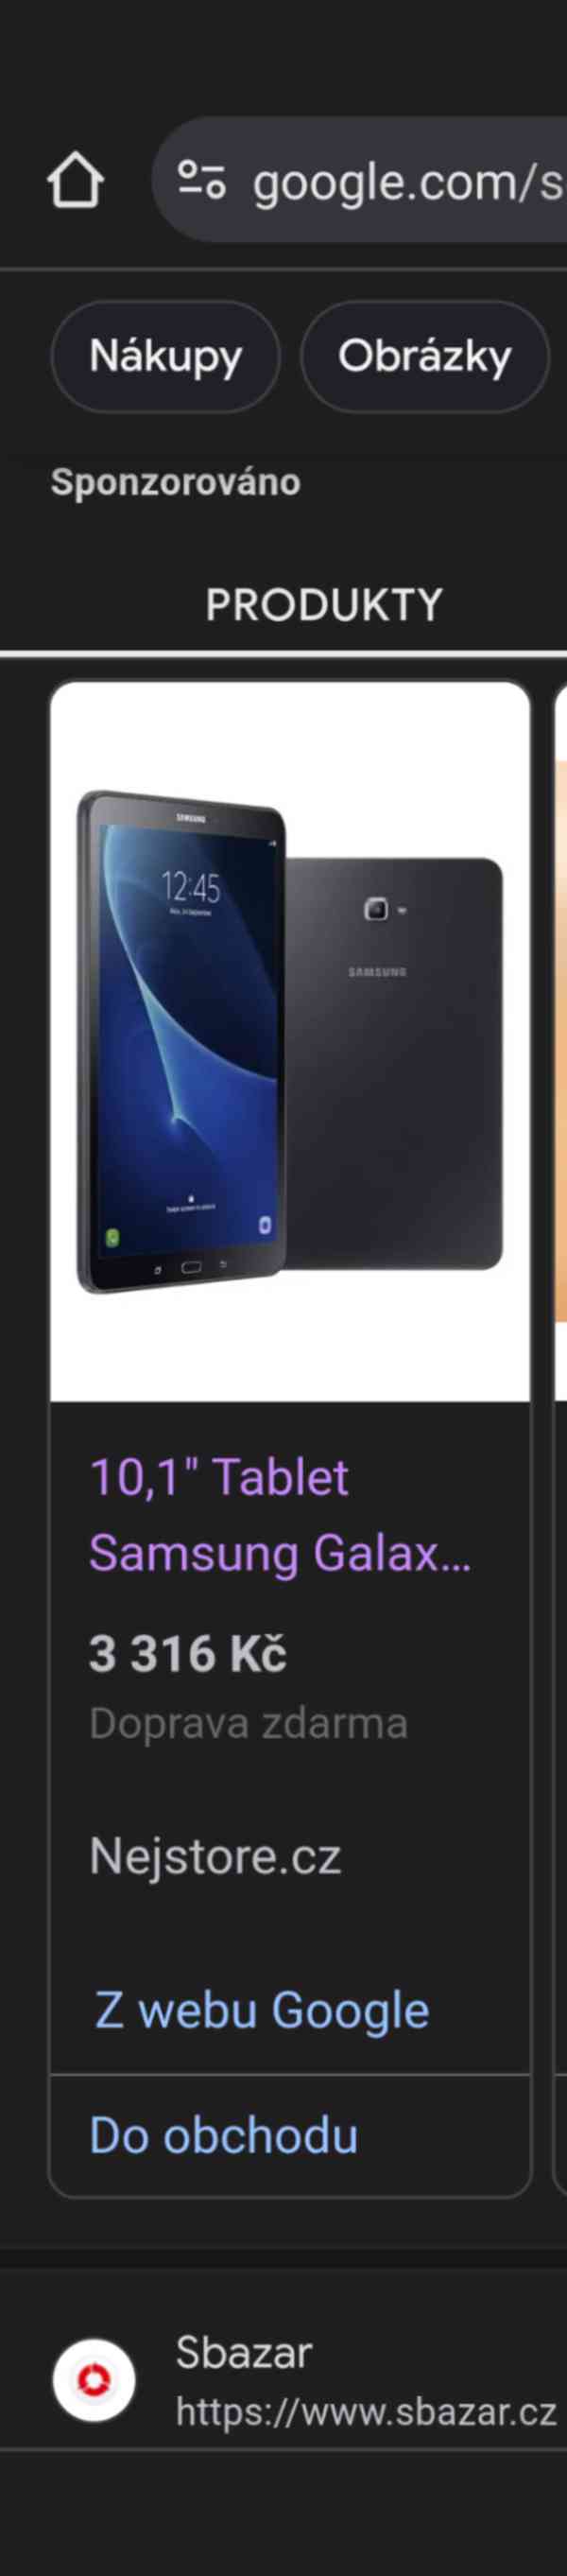 Samsung Galaxy Tab A SM-T585 16GB LTE Výměna ZA NEUROLY